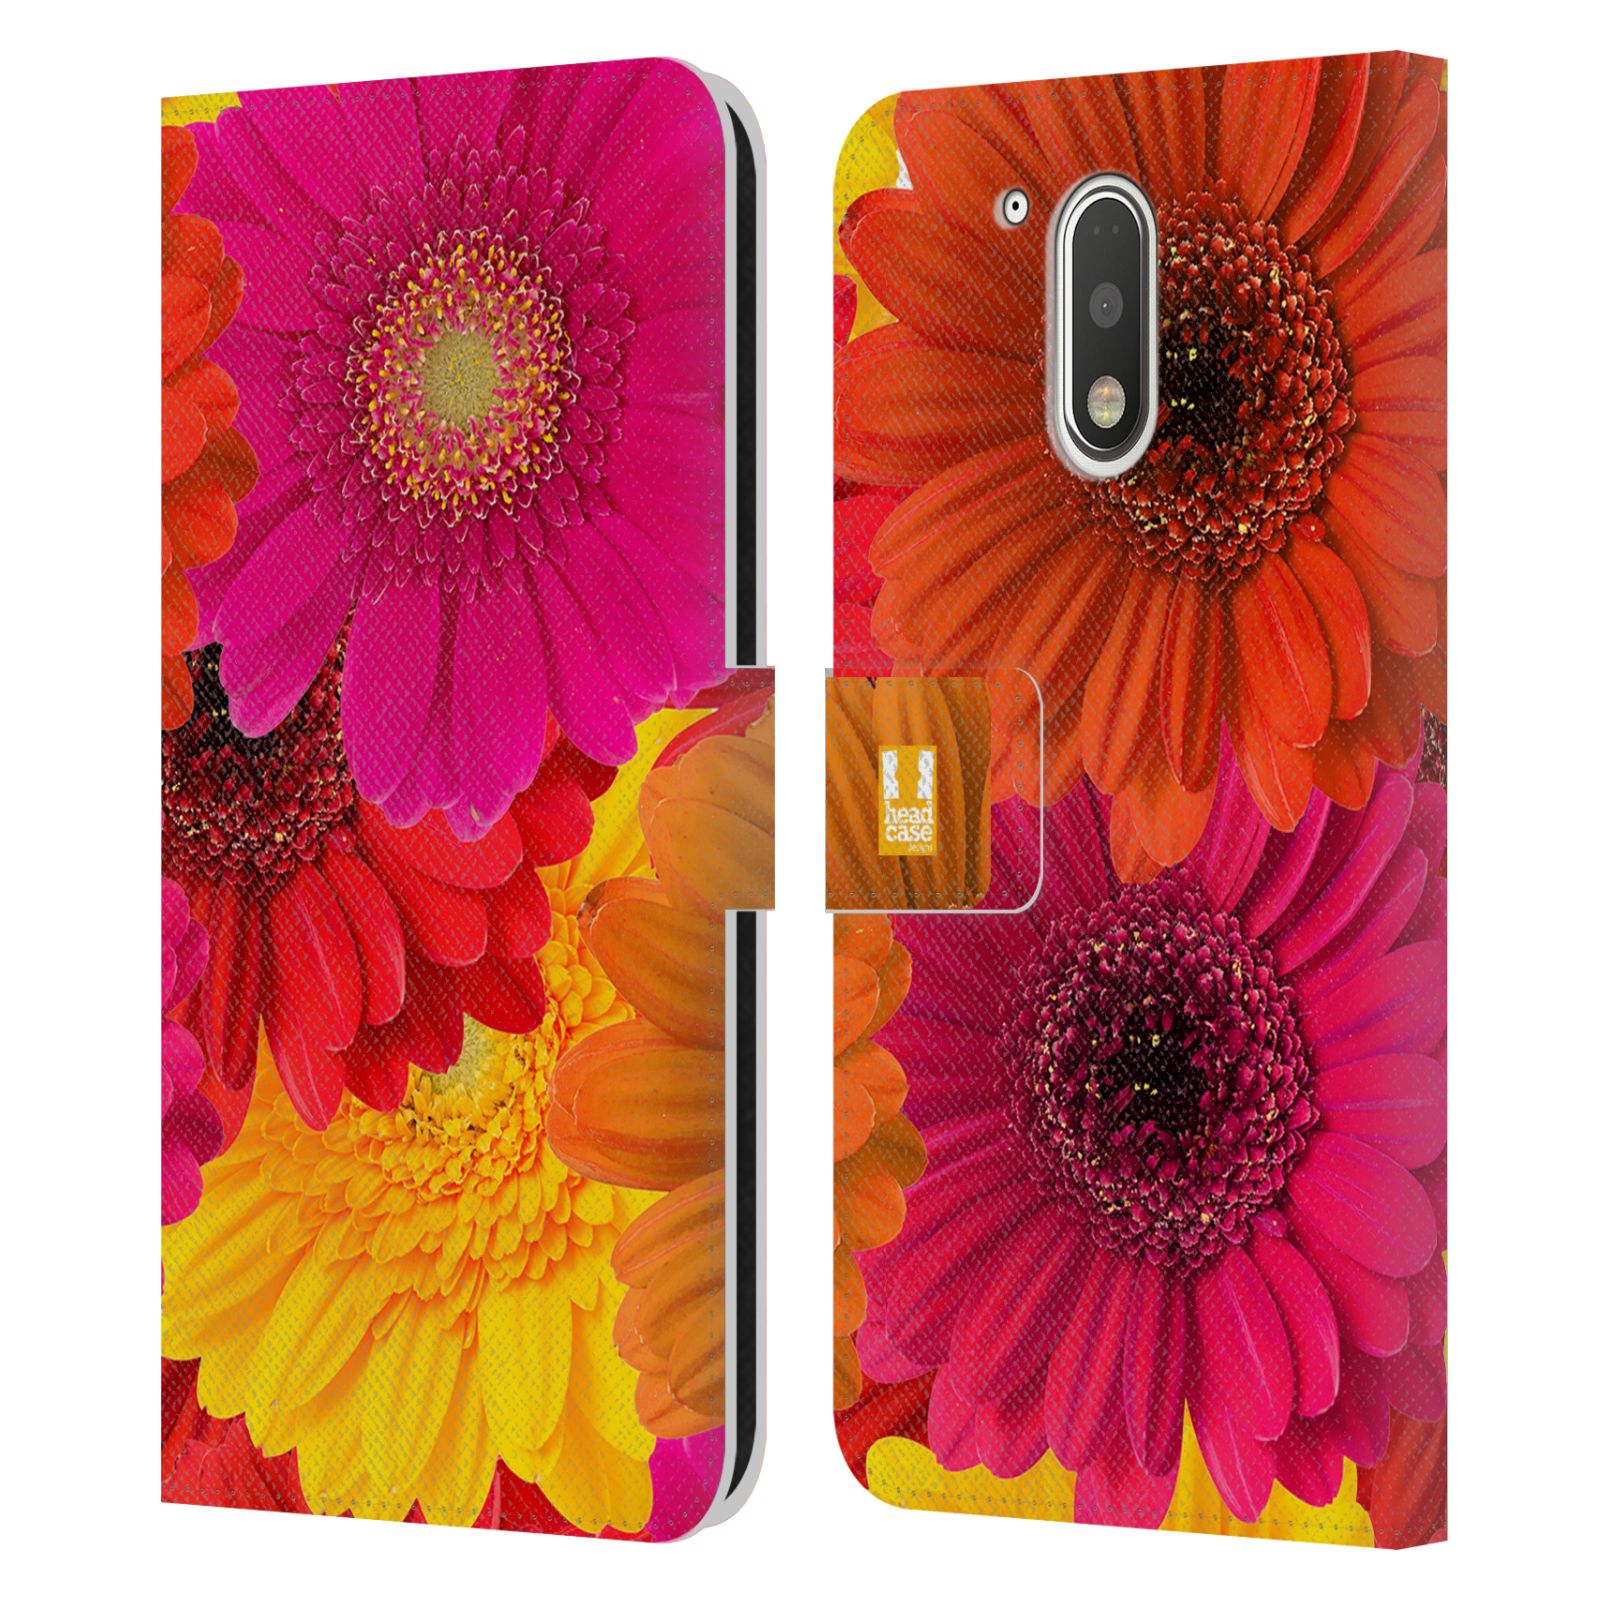 Pouzdro HEAD CASE na mobil Motorola Moto G41 květy foto fialová, oranžová GERBERA